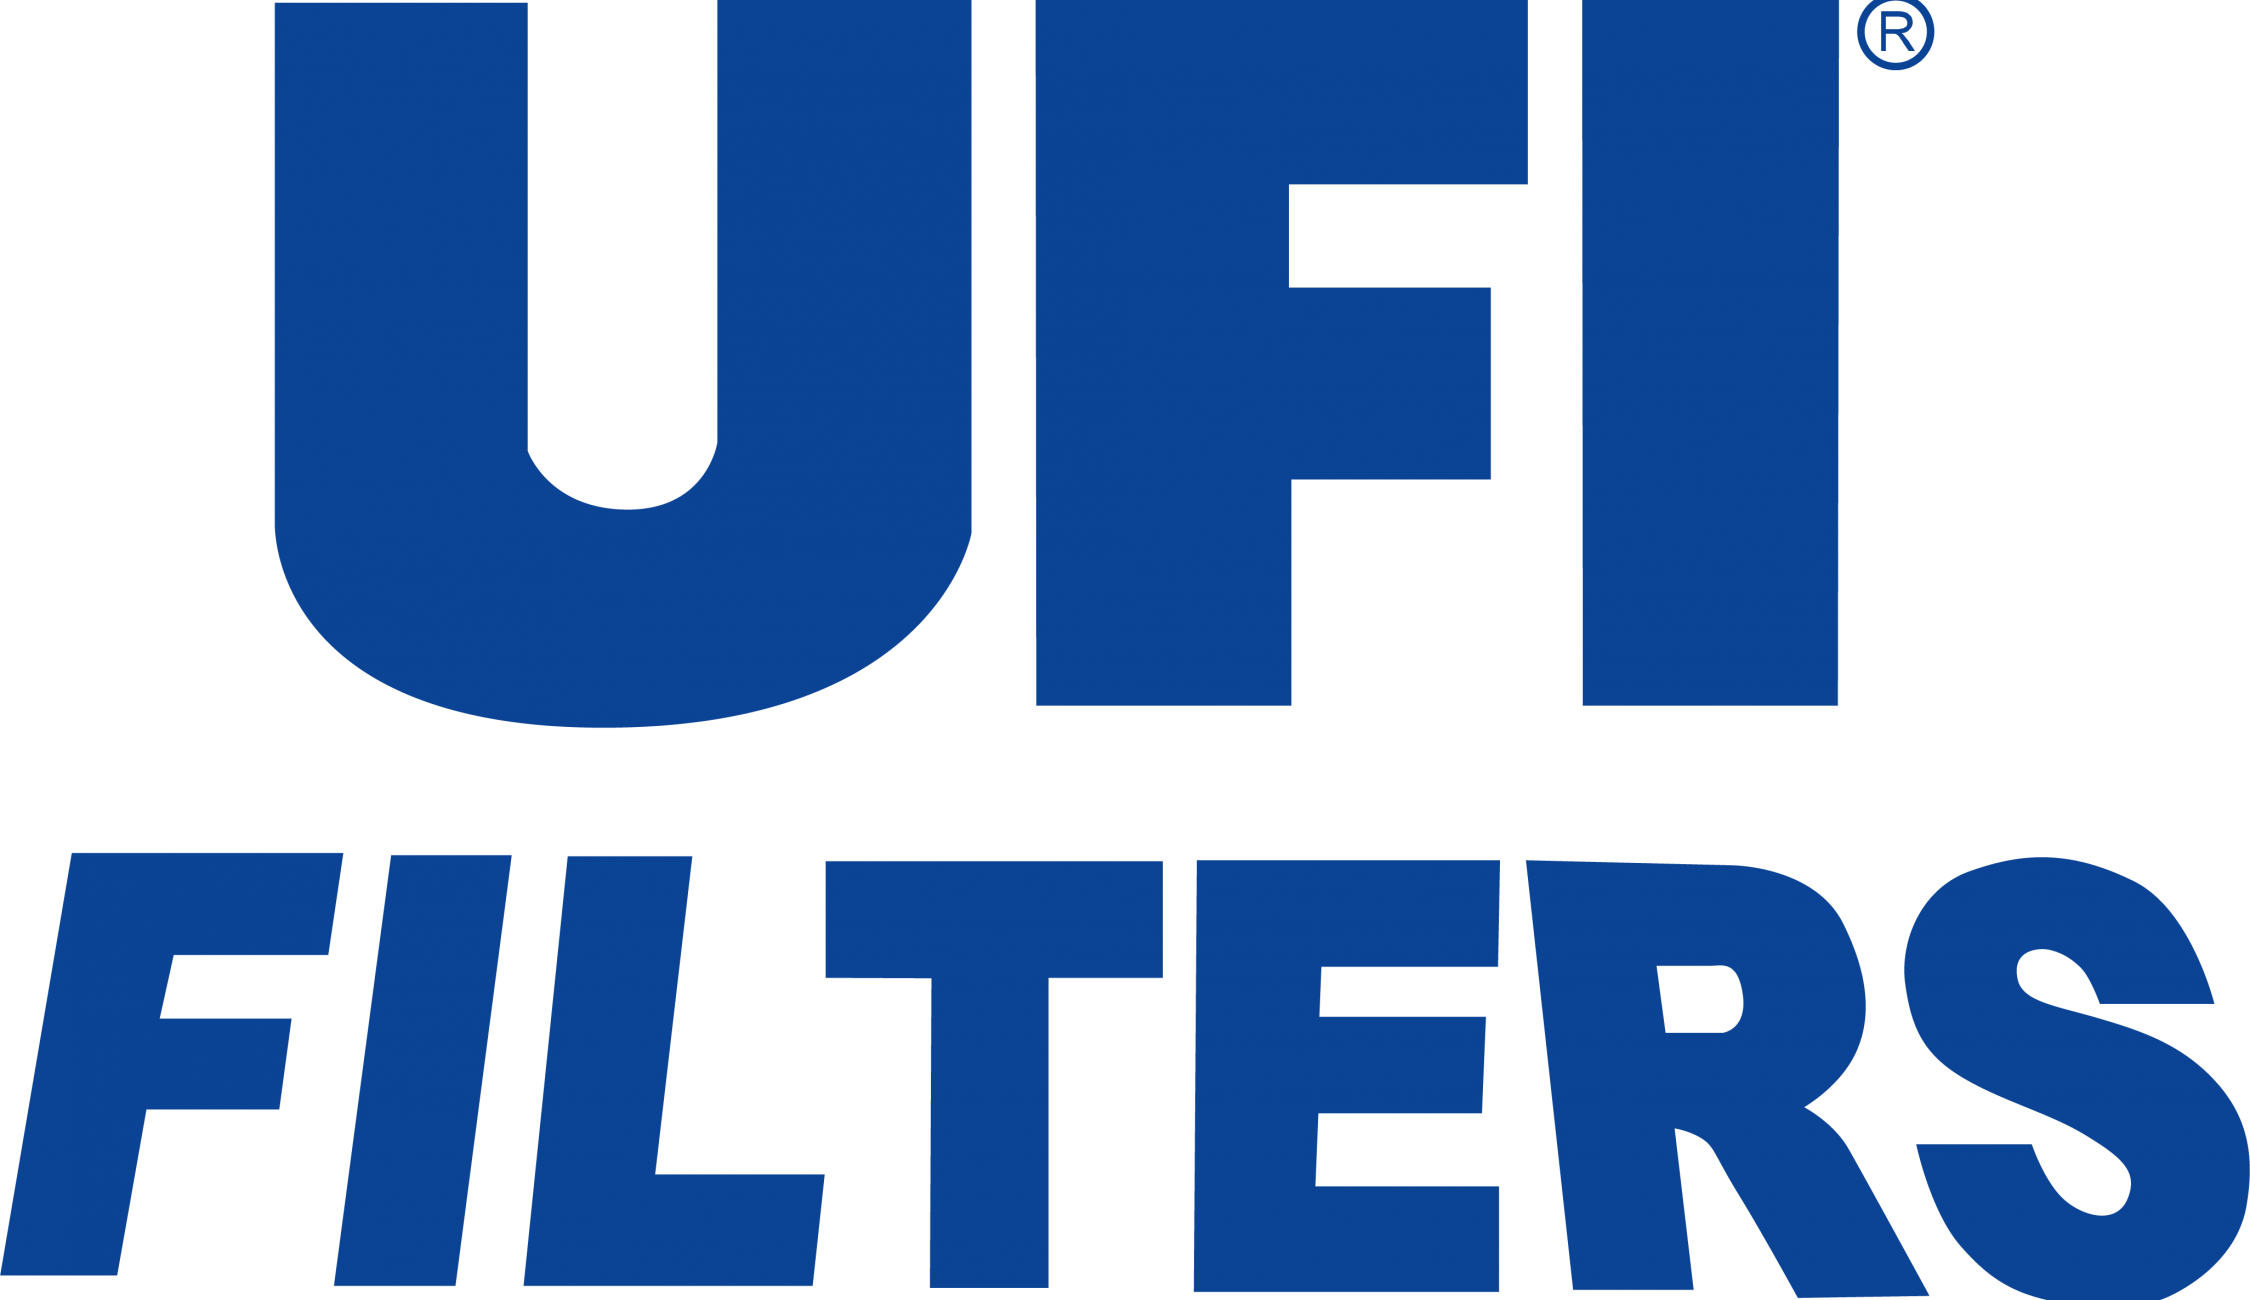 UFI_Filters